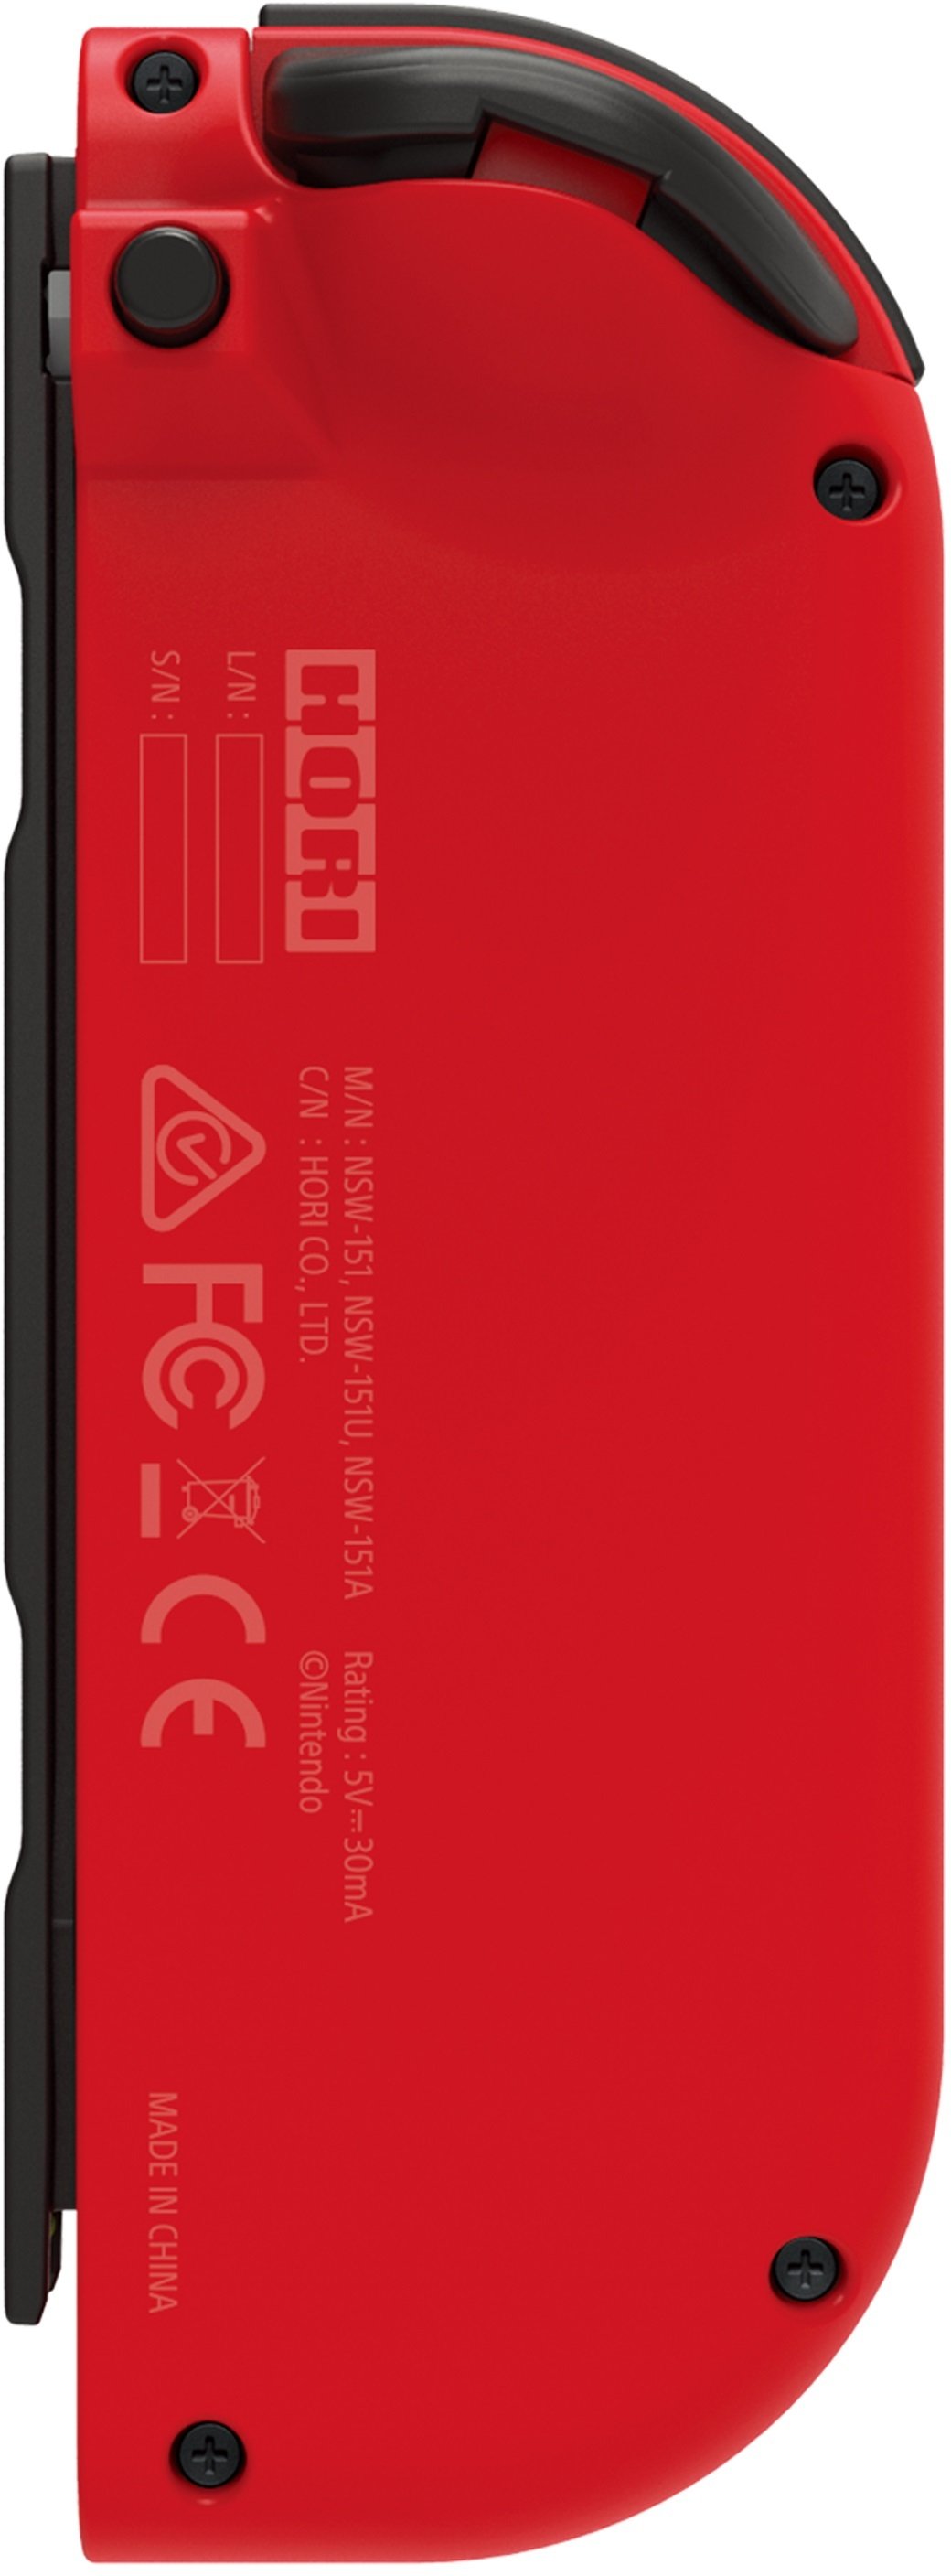 Контролер Hori D-Pad Mario (лівий) для Nintendo Switch, Red (810050910477) - фото 2